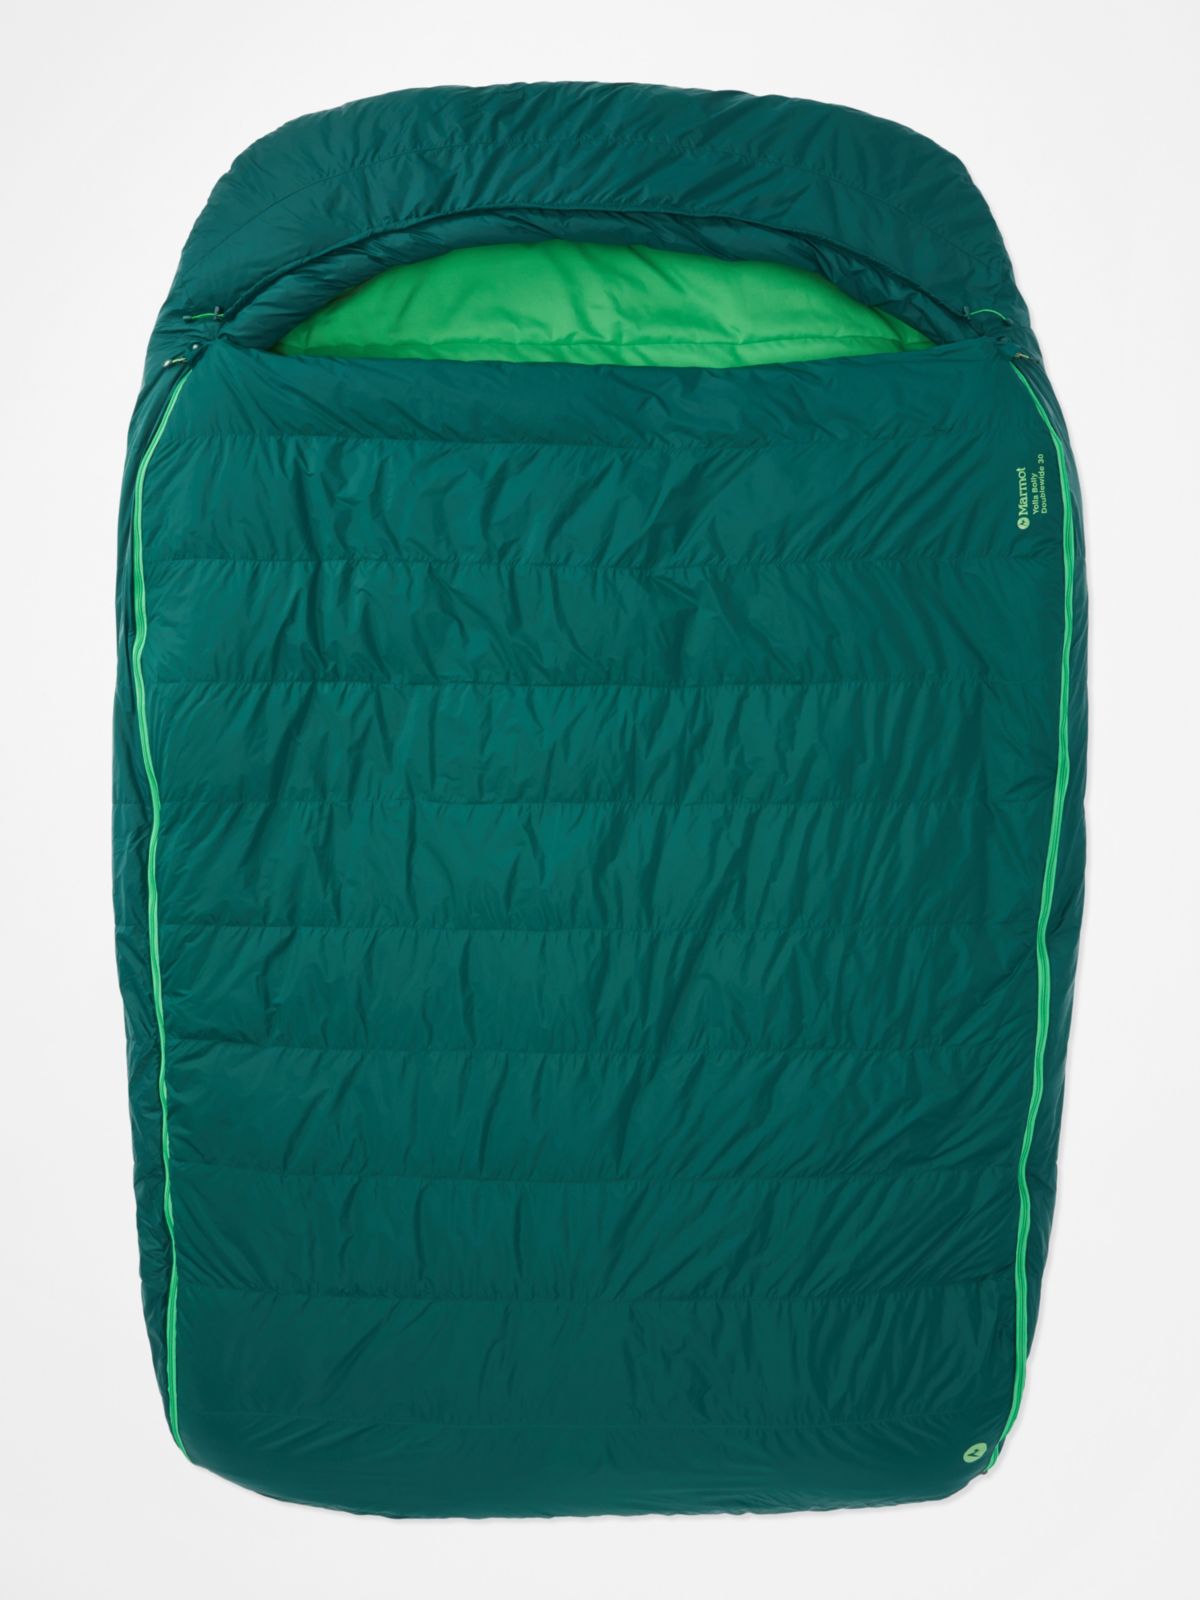 green sleeping bag